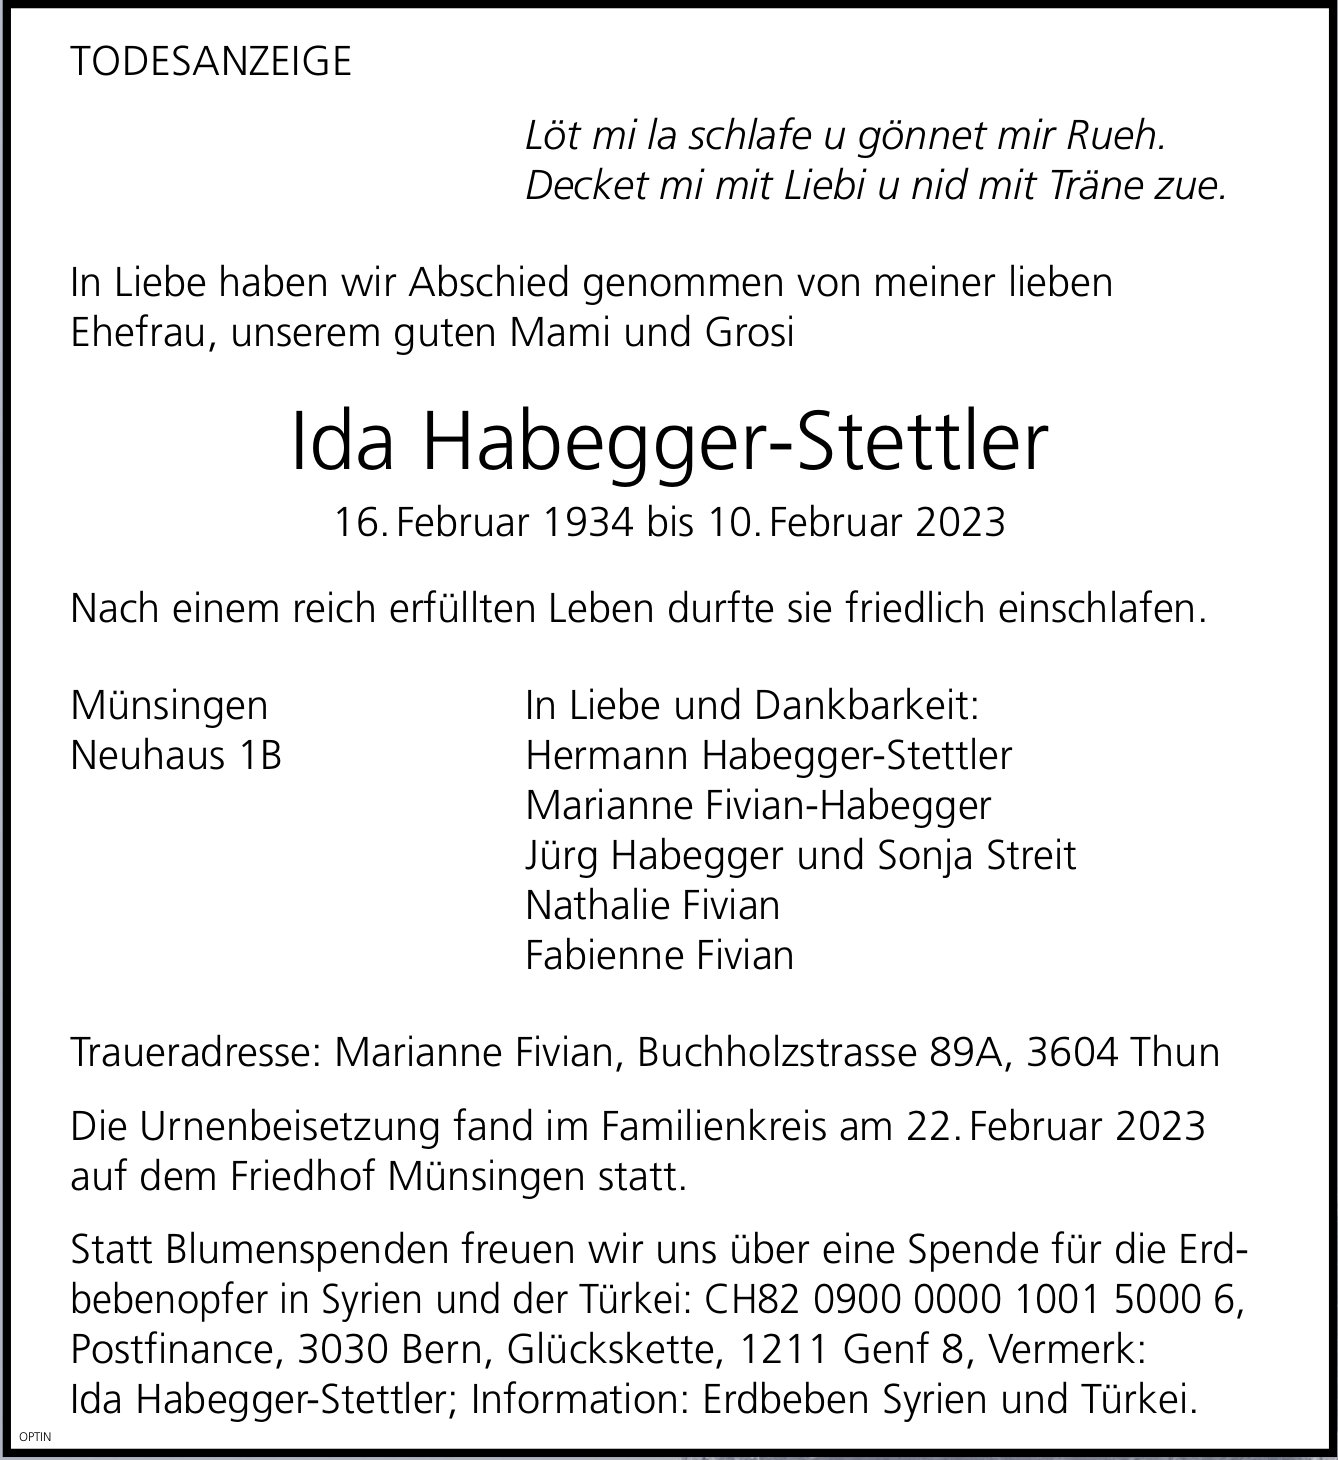 Ida Habegger-Stettler, Februar 2023 / TA